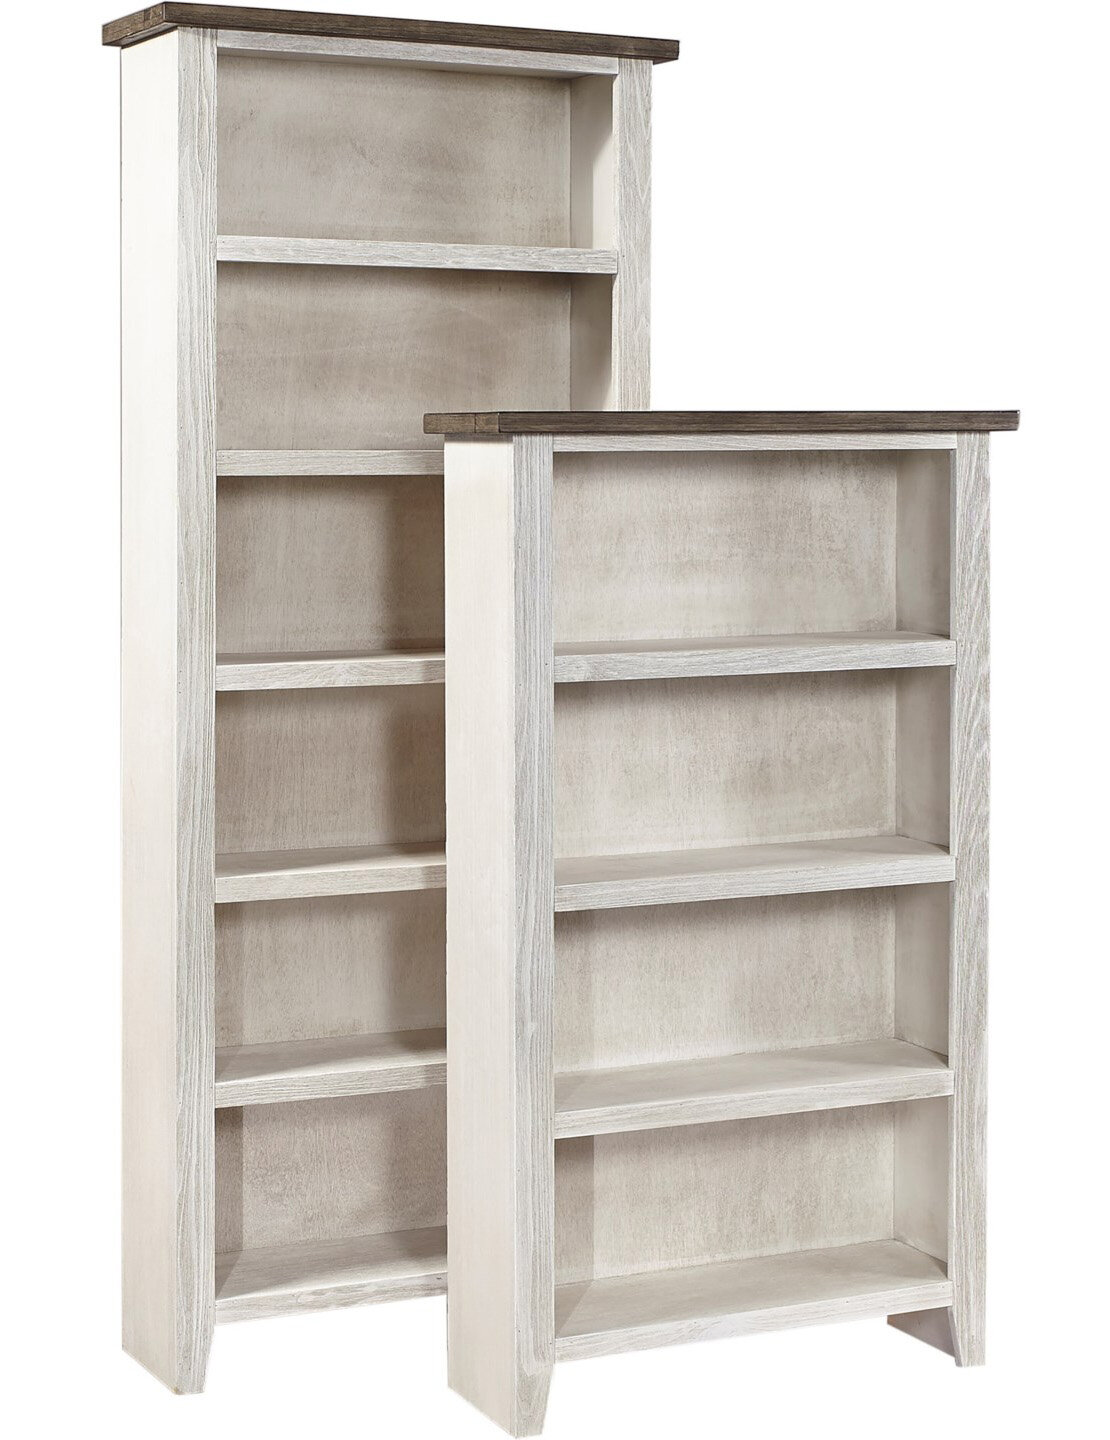 Rustic White Bookcase